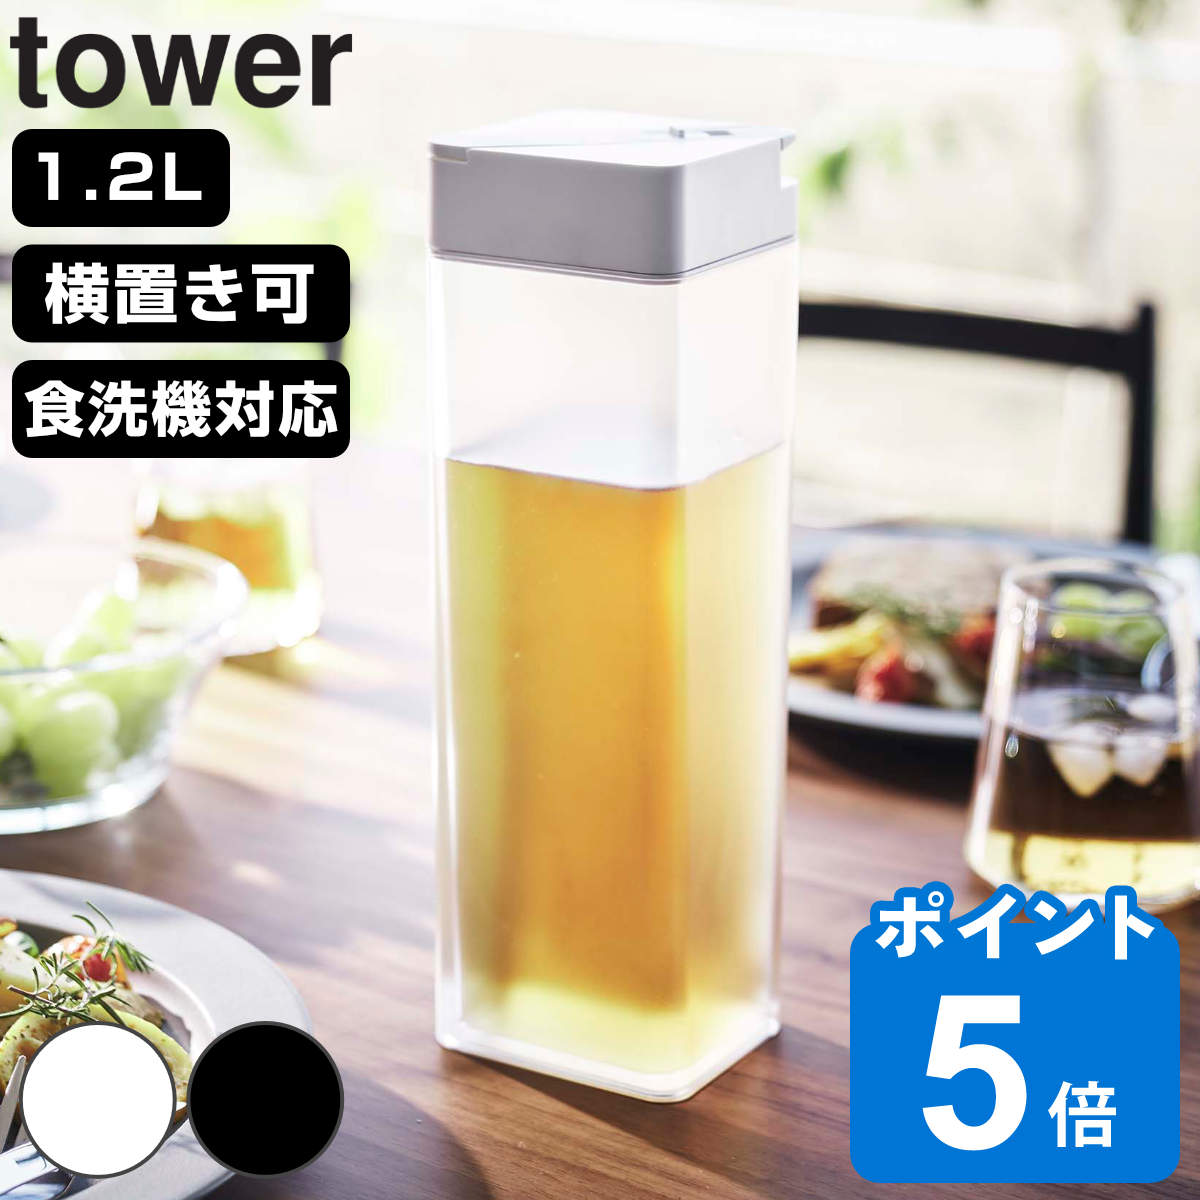 山崎実業 tower 倒して置ける冷水筒 タワー